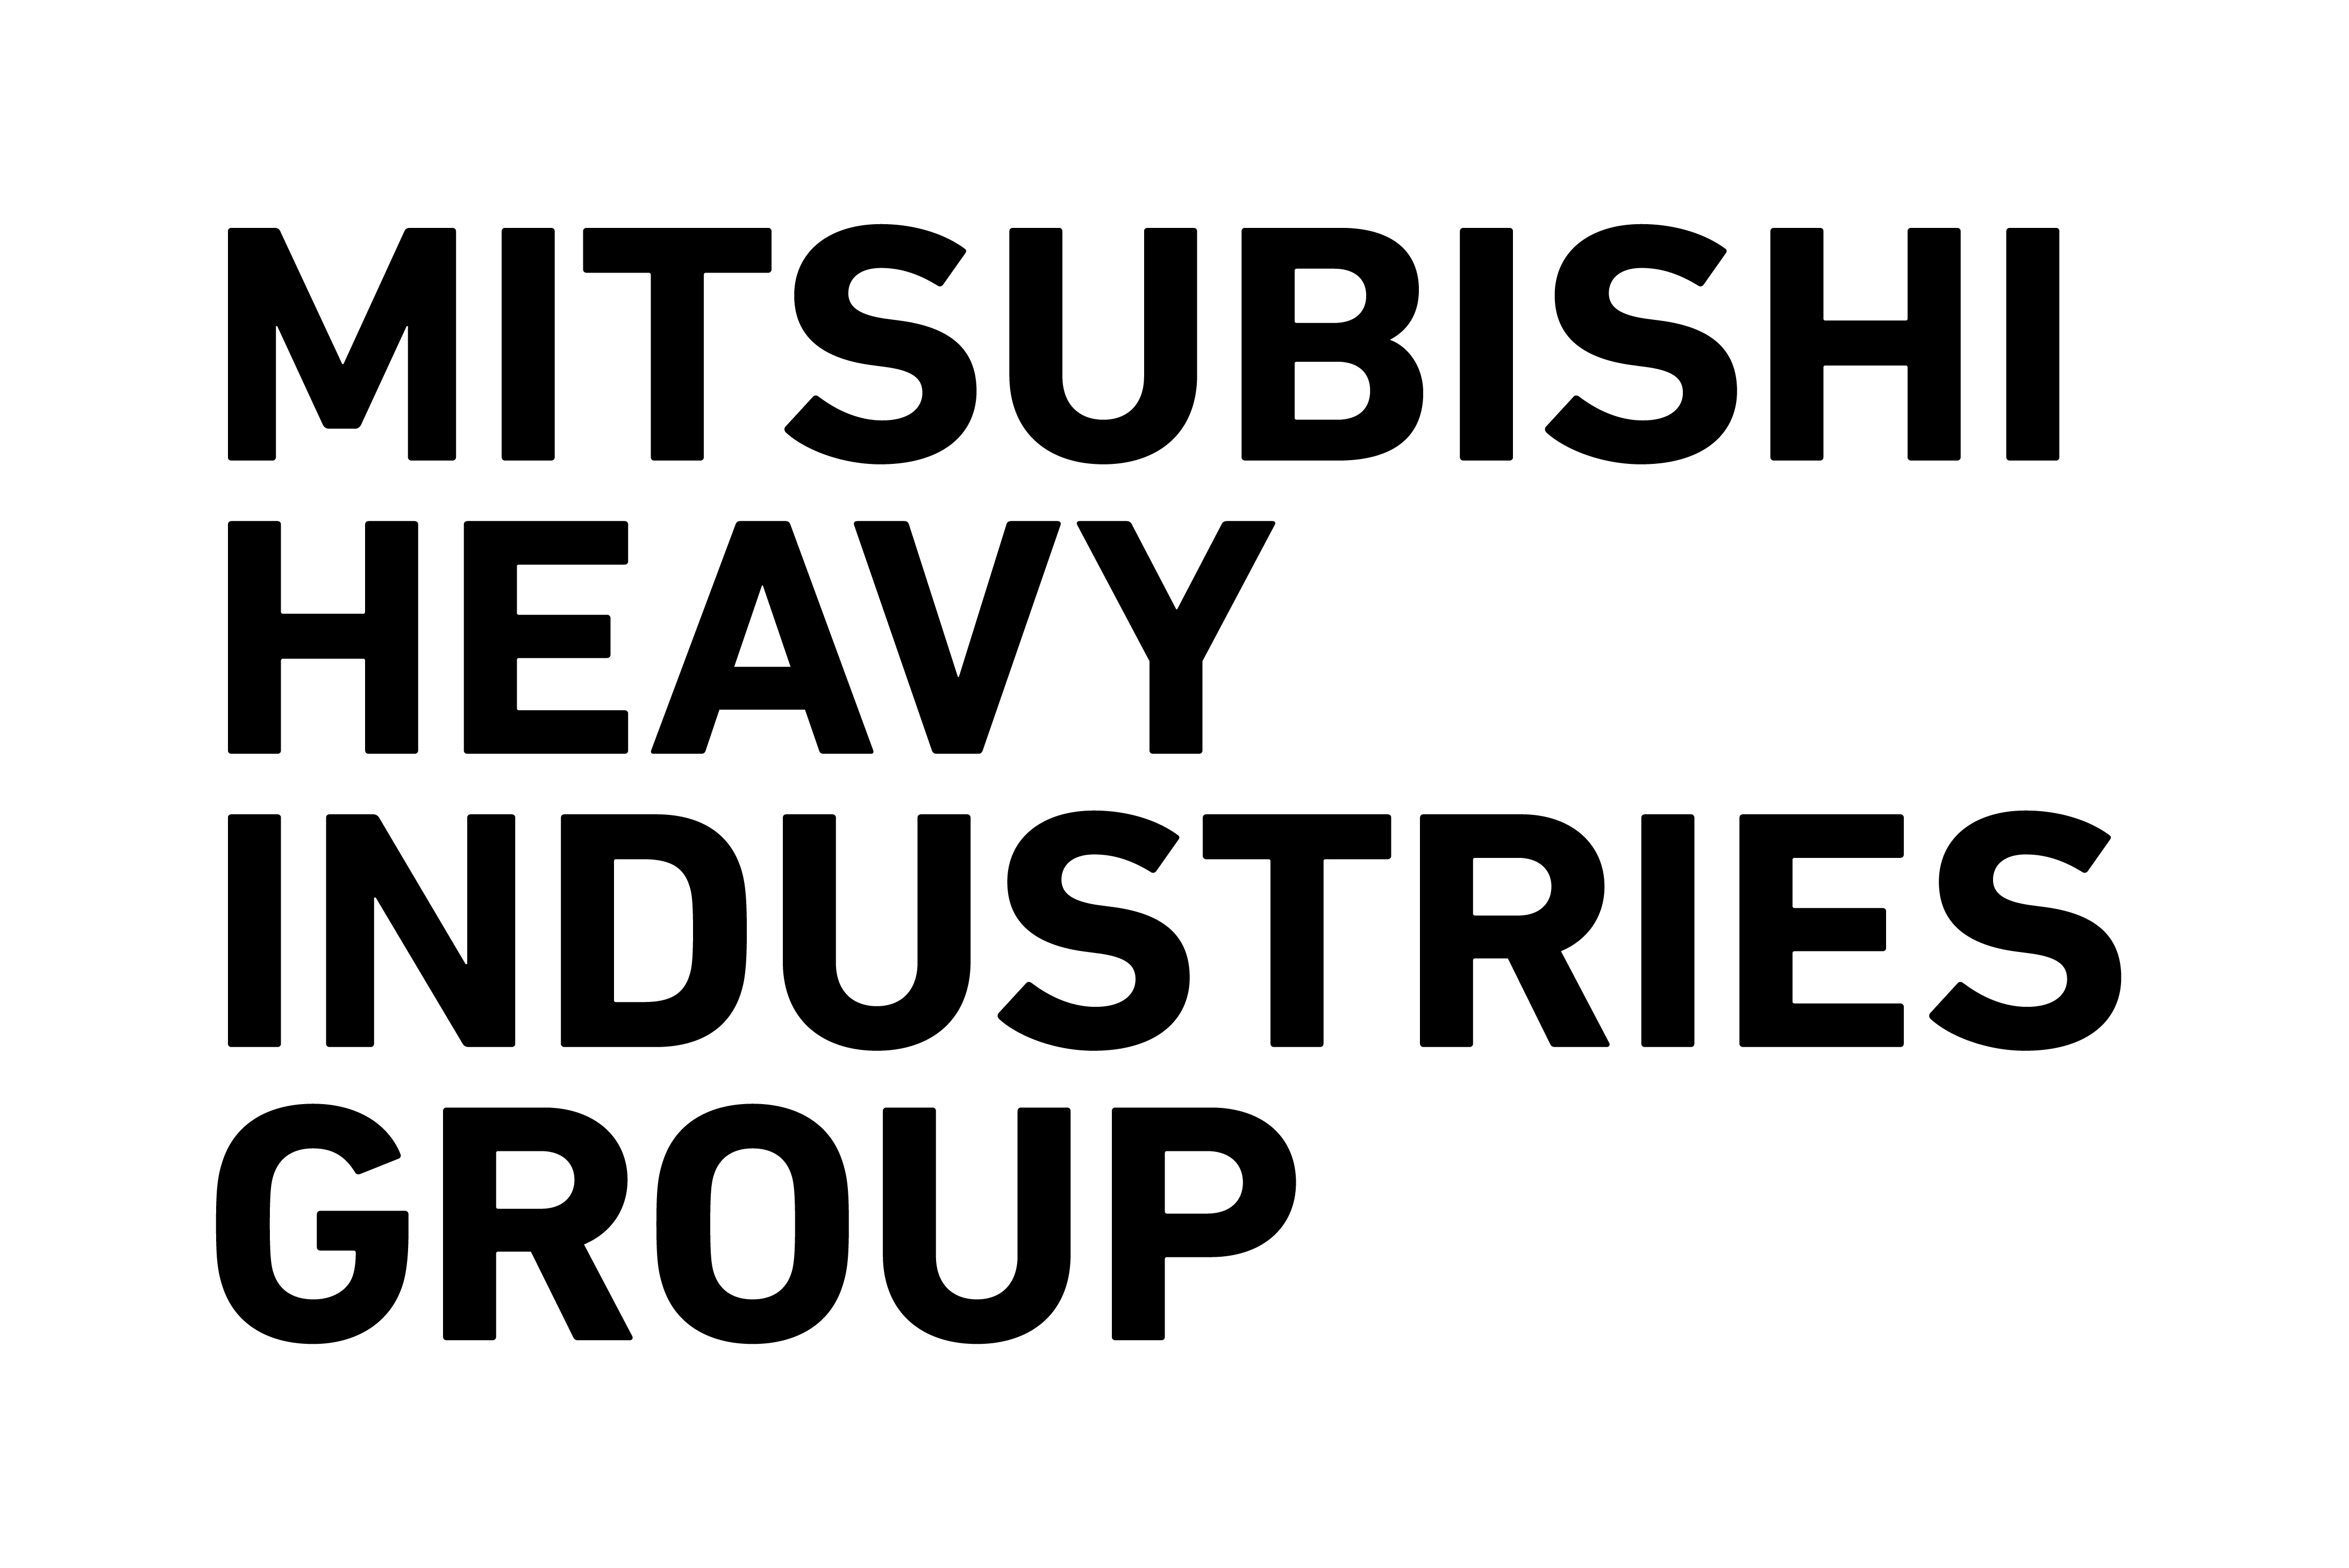 Mitsubishi Heavy Industries Group